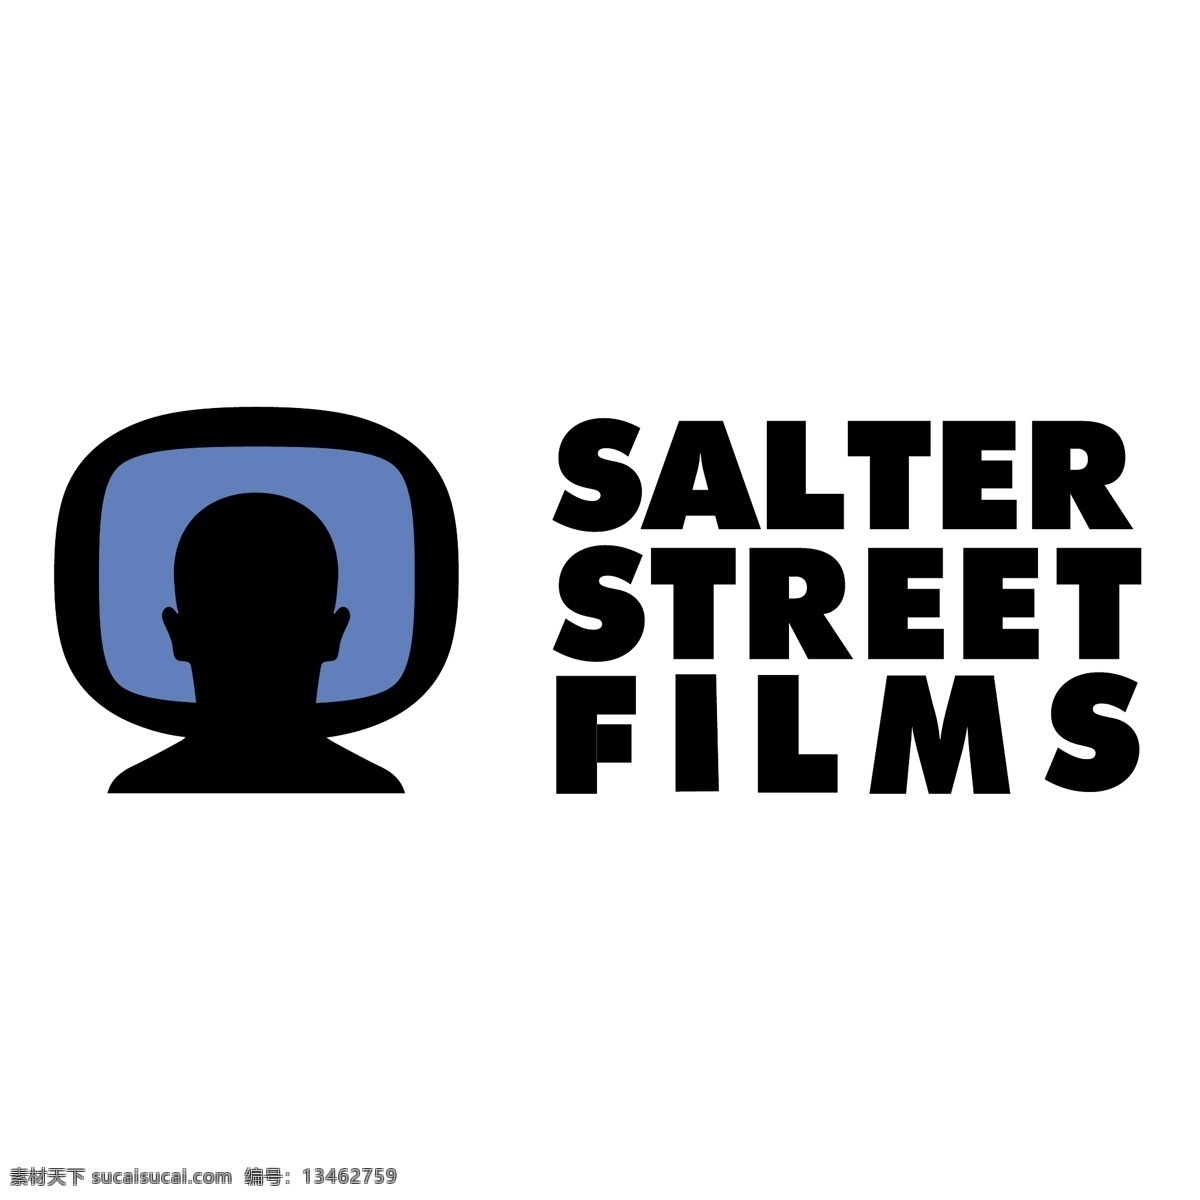 索尔特 电影 街 免费 电影下载 盐商 标志 免费电影 psd源文件 logo设计